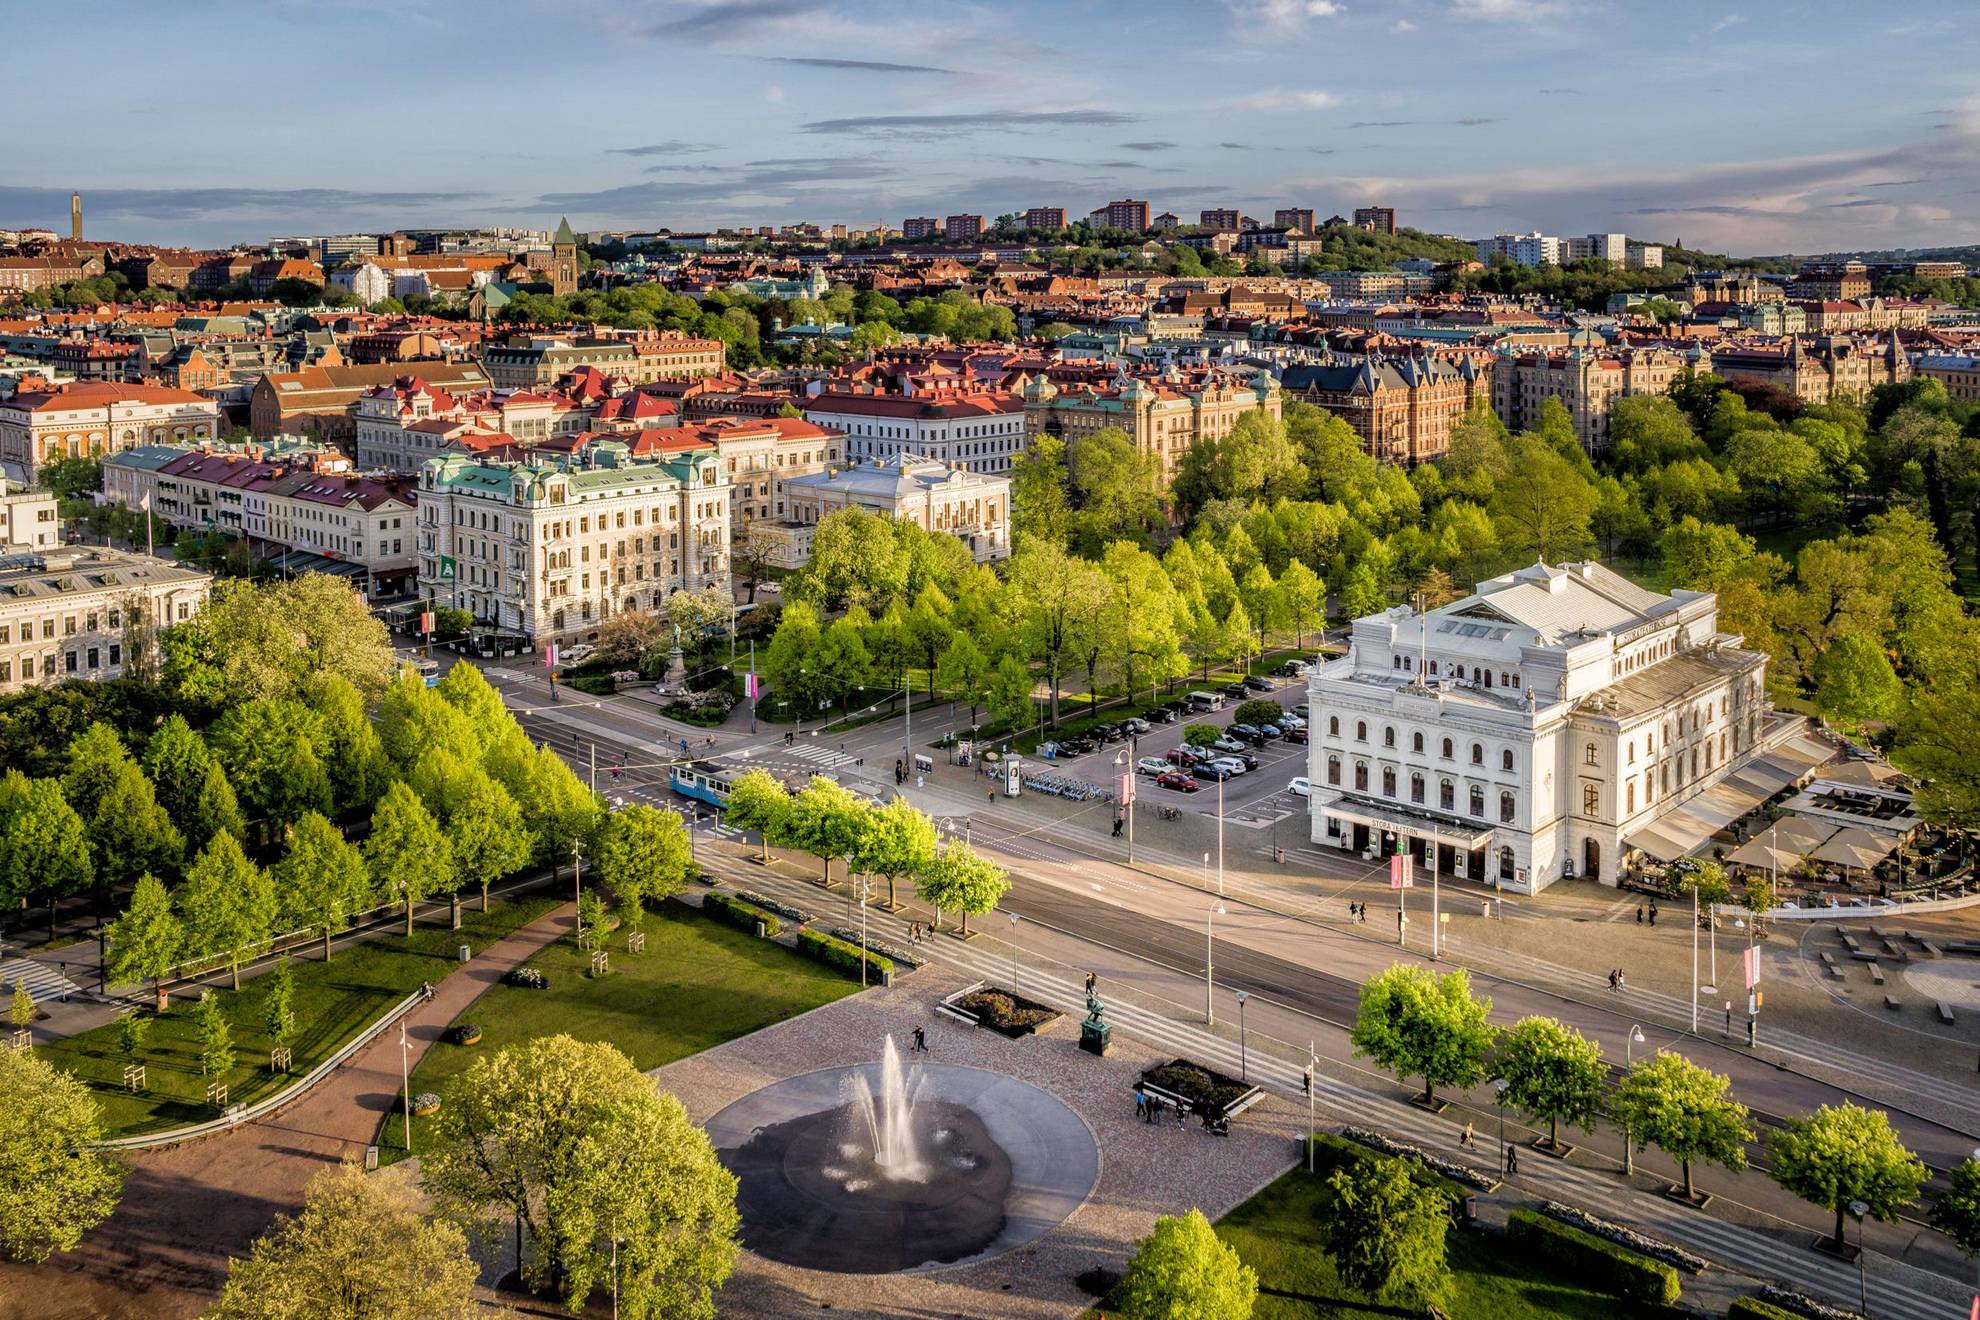 Vue aérienne de Göteborg avec ses rues, ses grands bâtiments et au premier-plan un parc avec une fontaine devant.